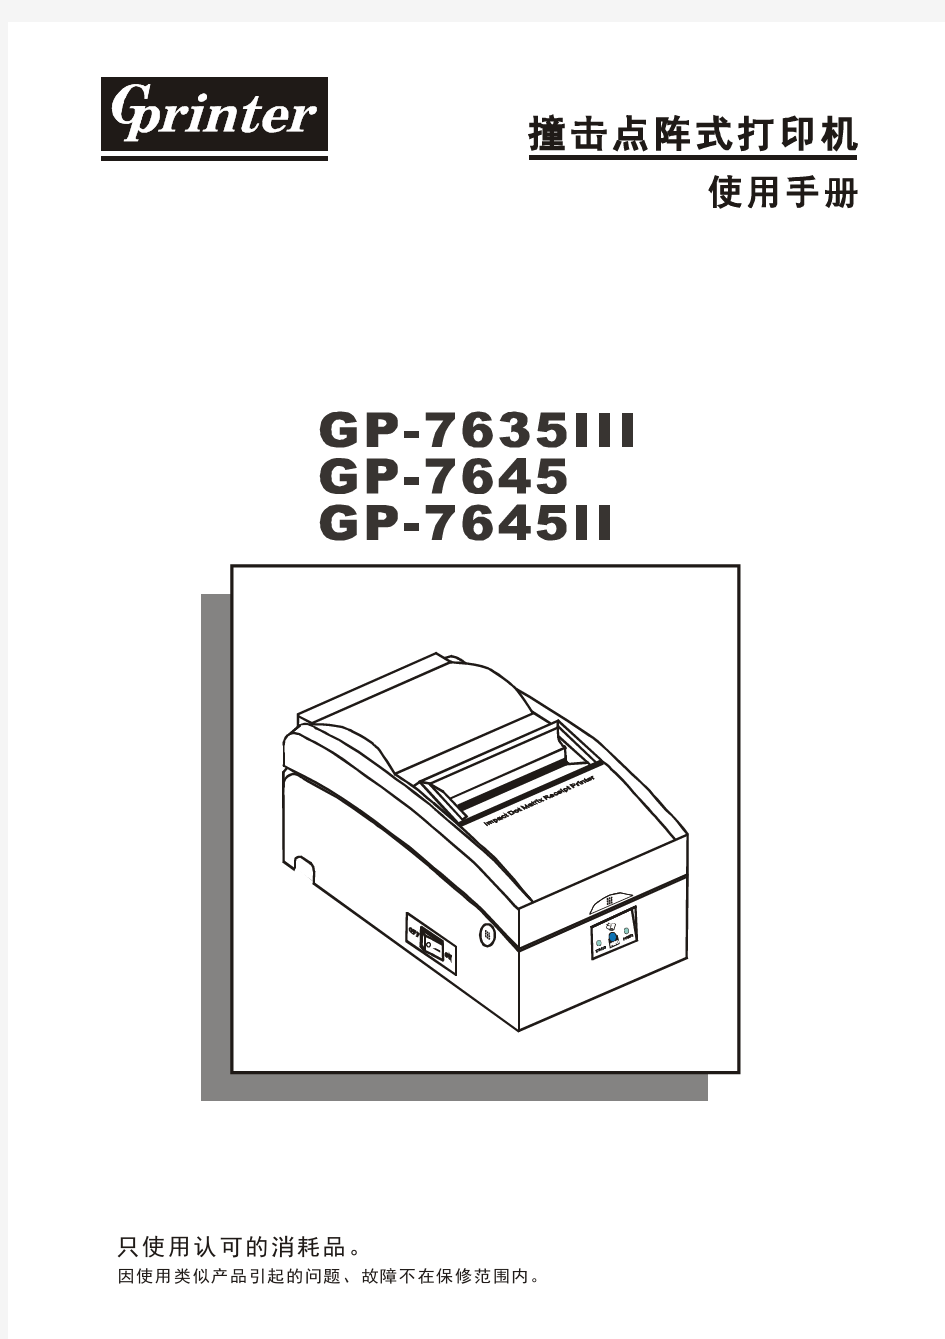 佳博GP-76XX针式打印机安装使用手册